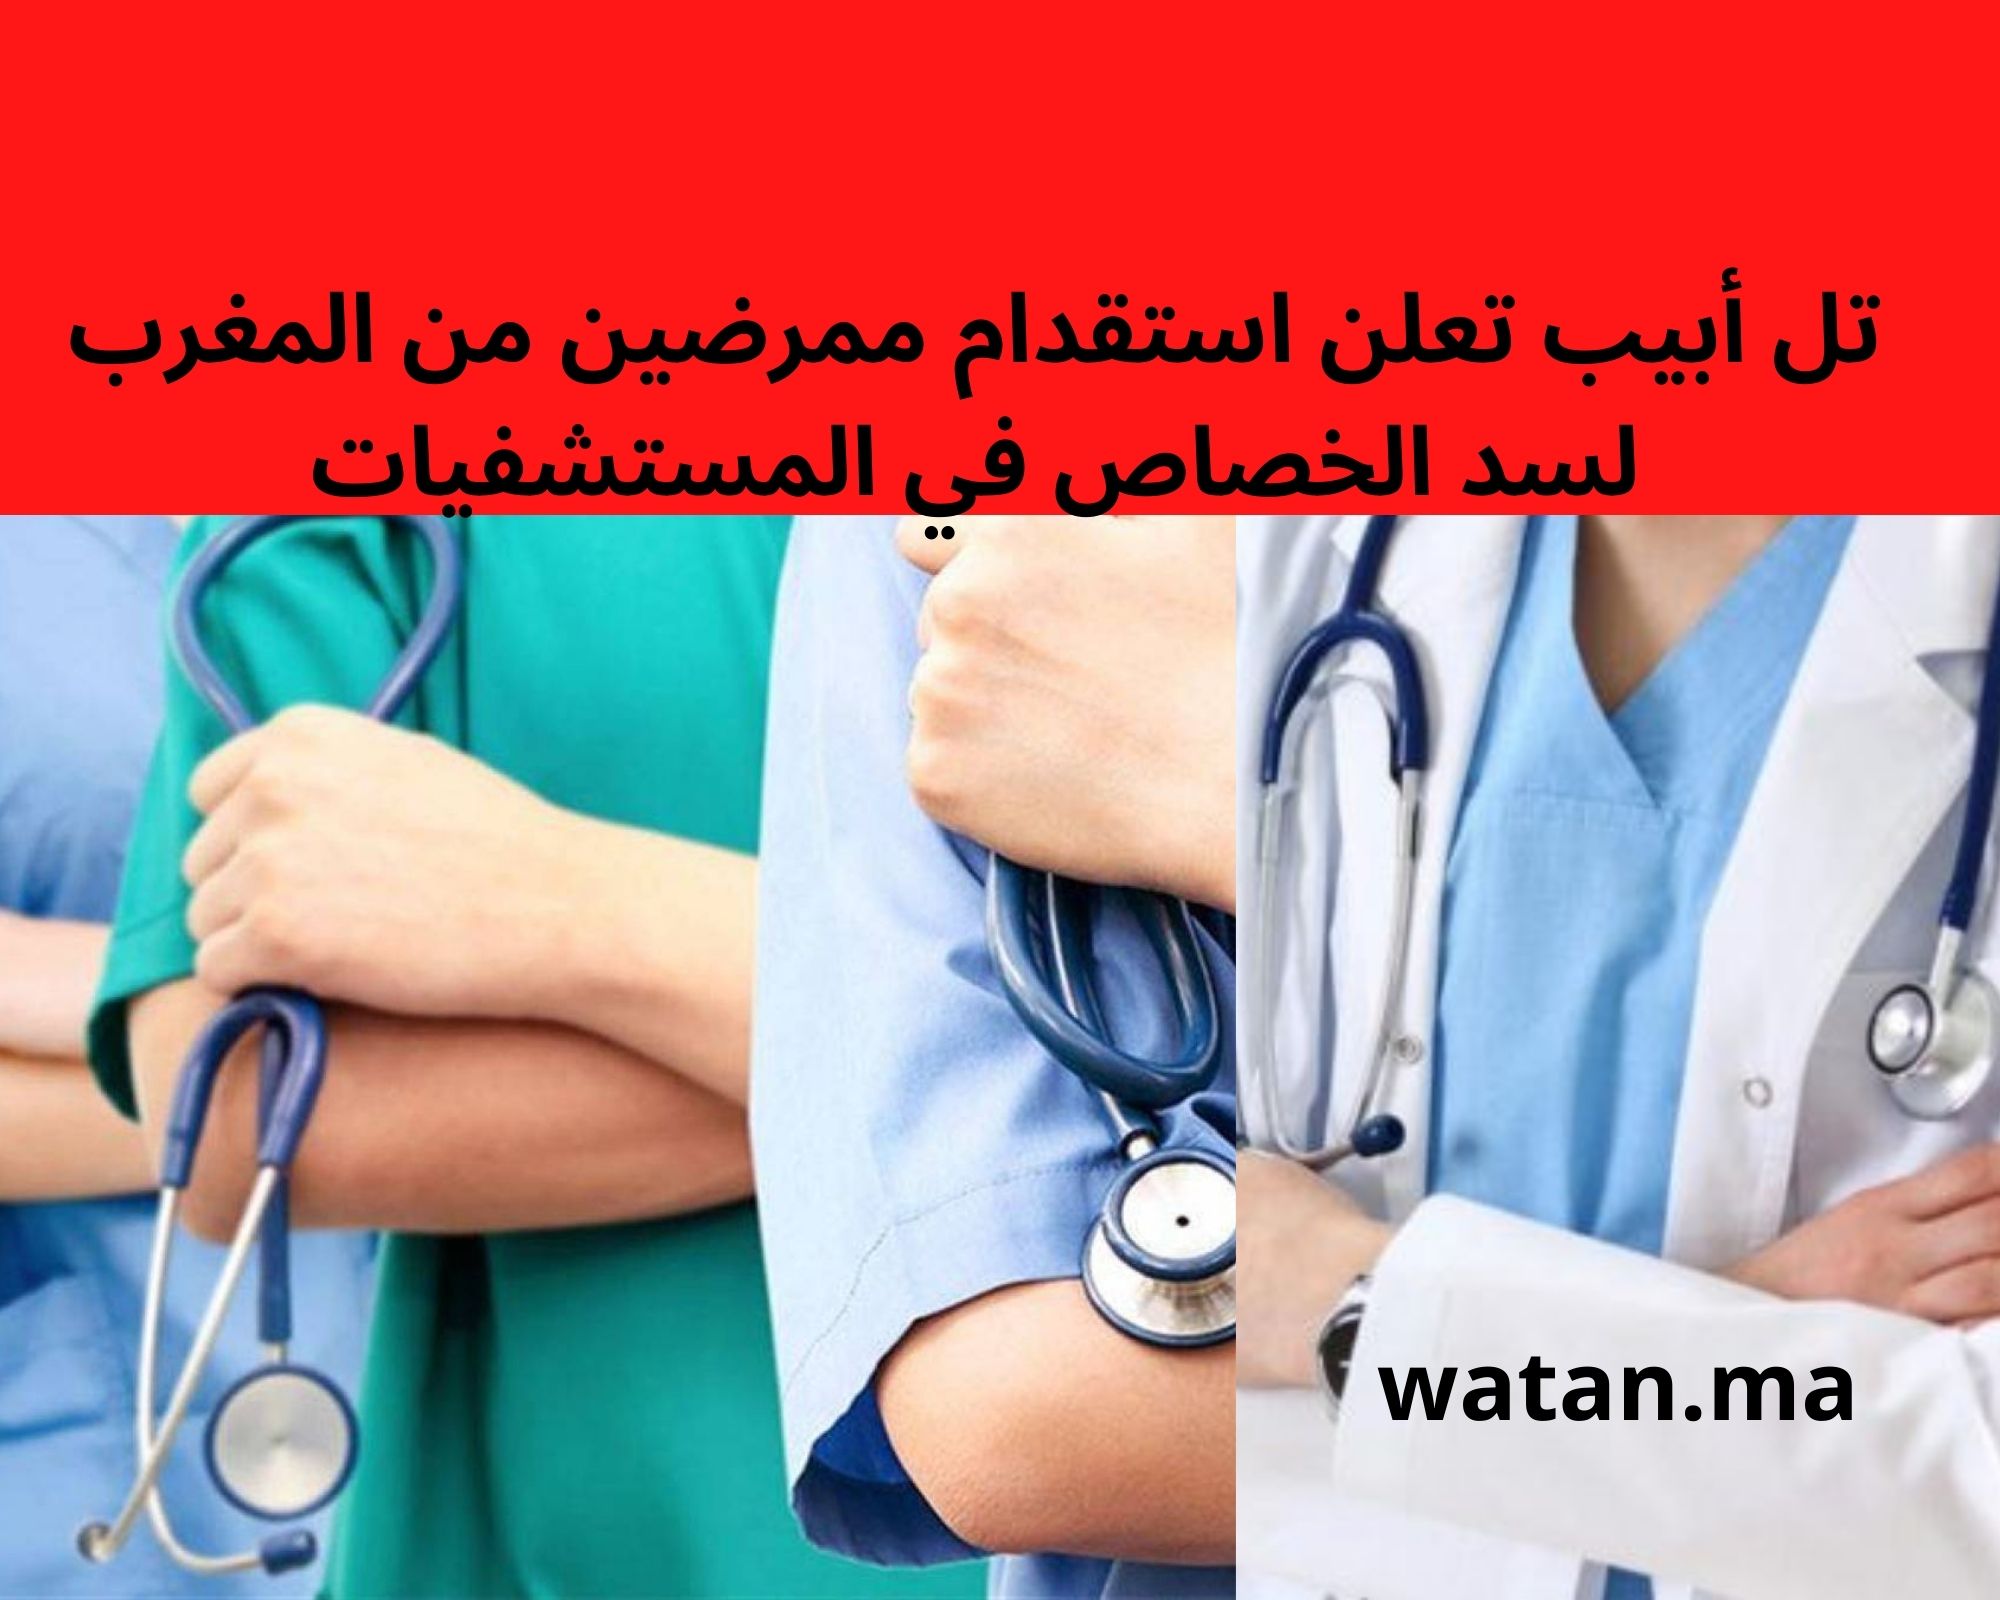 تل أبيب تعلن استقدام ممرضين من المغرب لسد الخصاص في المستشفيات